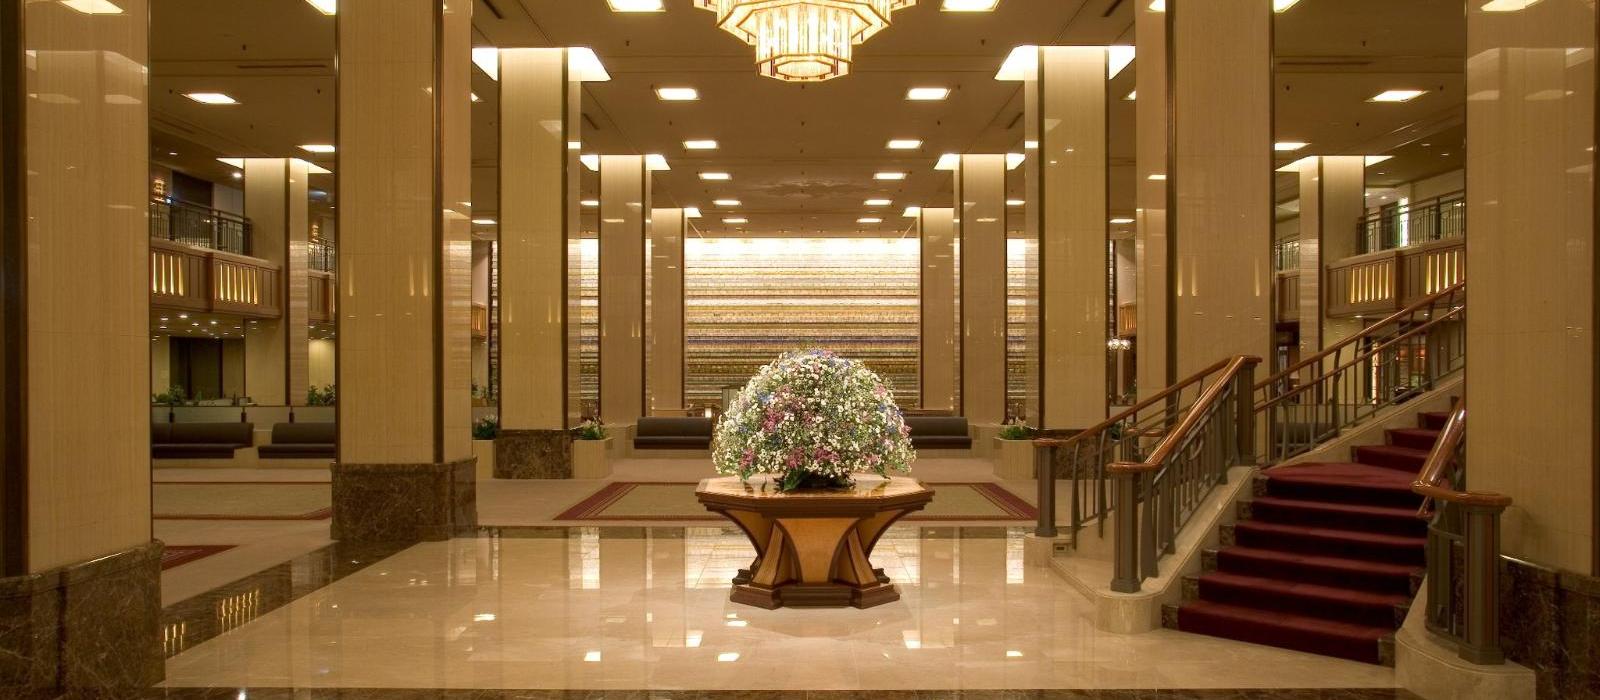 东京帝国酒店(Imperial Hotel, Tokyo) 大堂图片  www.lhw.cn